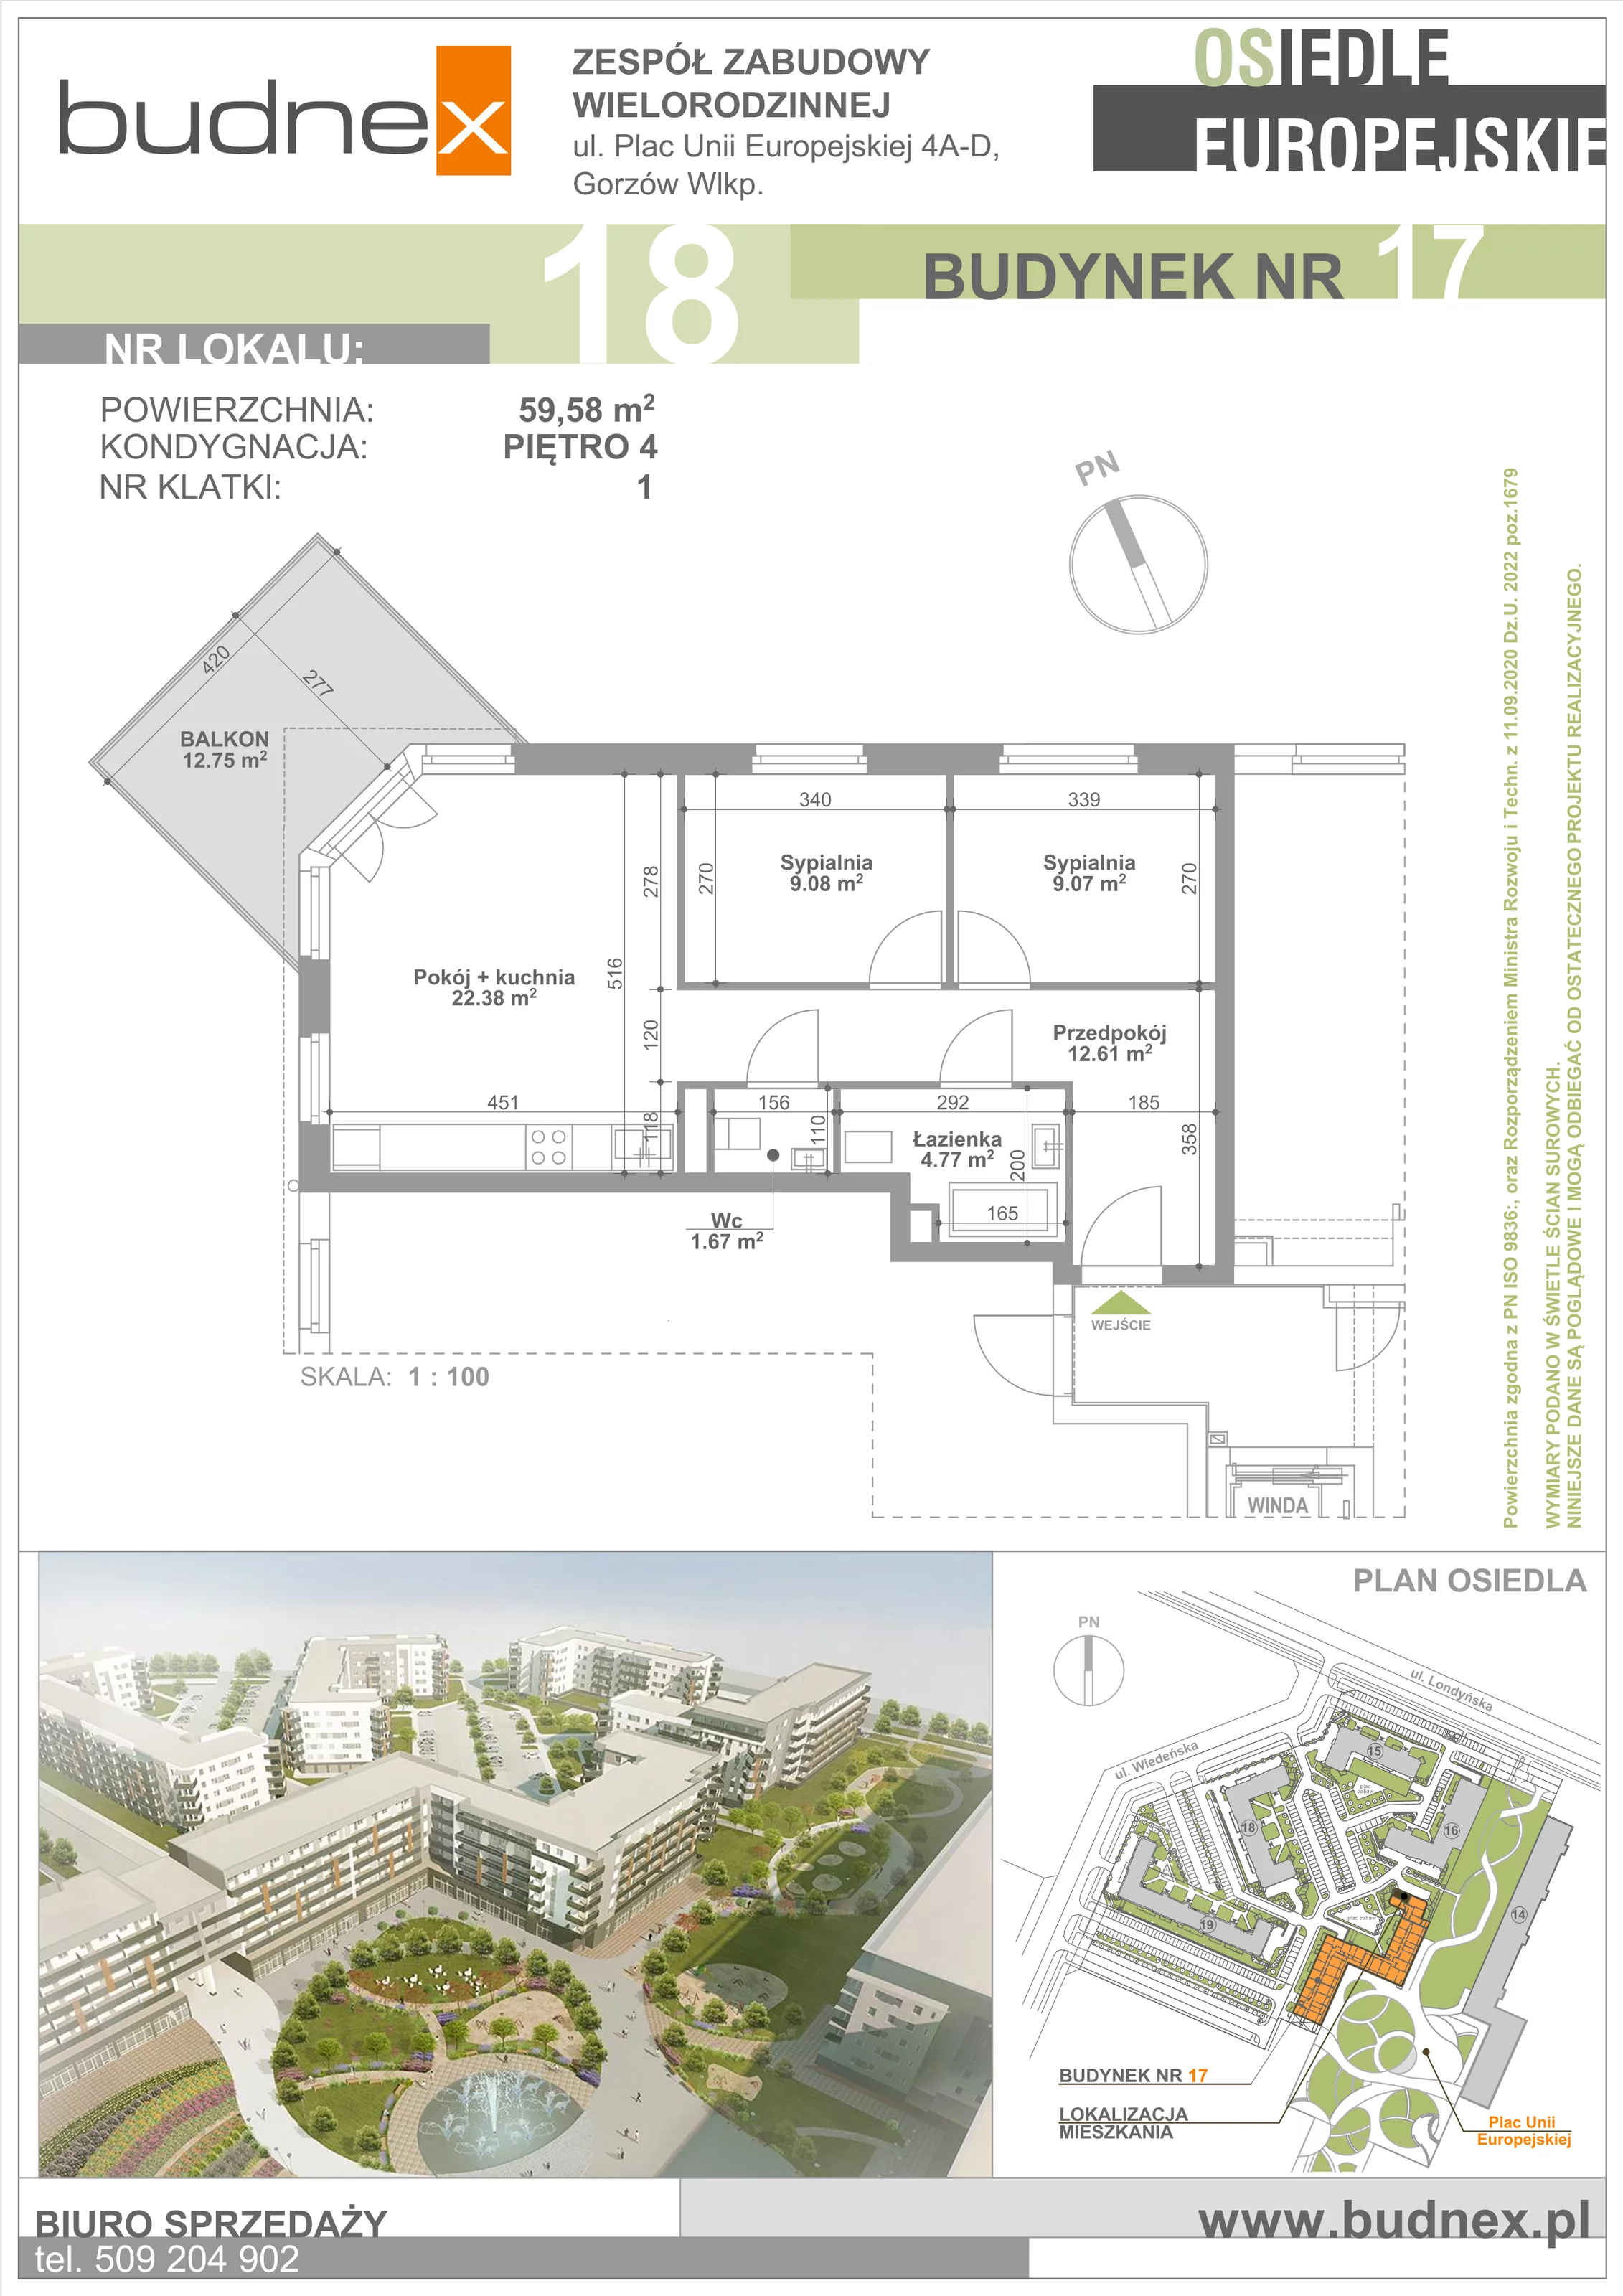 Mieszkanie 59,58 m², piętro 4, oferta nr 1/M18, Osiedle Europejskie - Budynek 17, Gorzów Wielkopolski, Plac Unii Europejskiej 4A-D